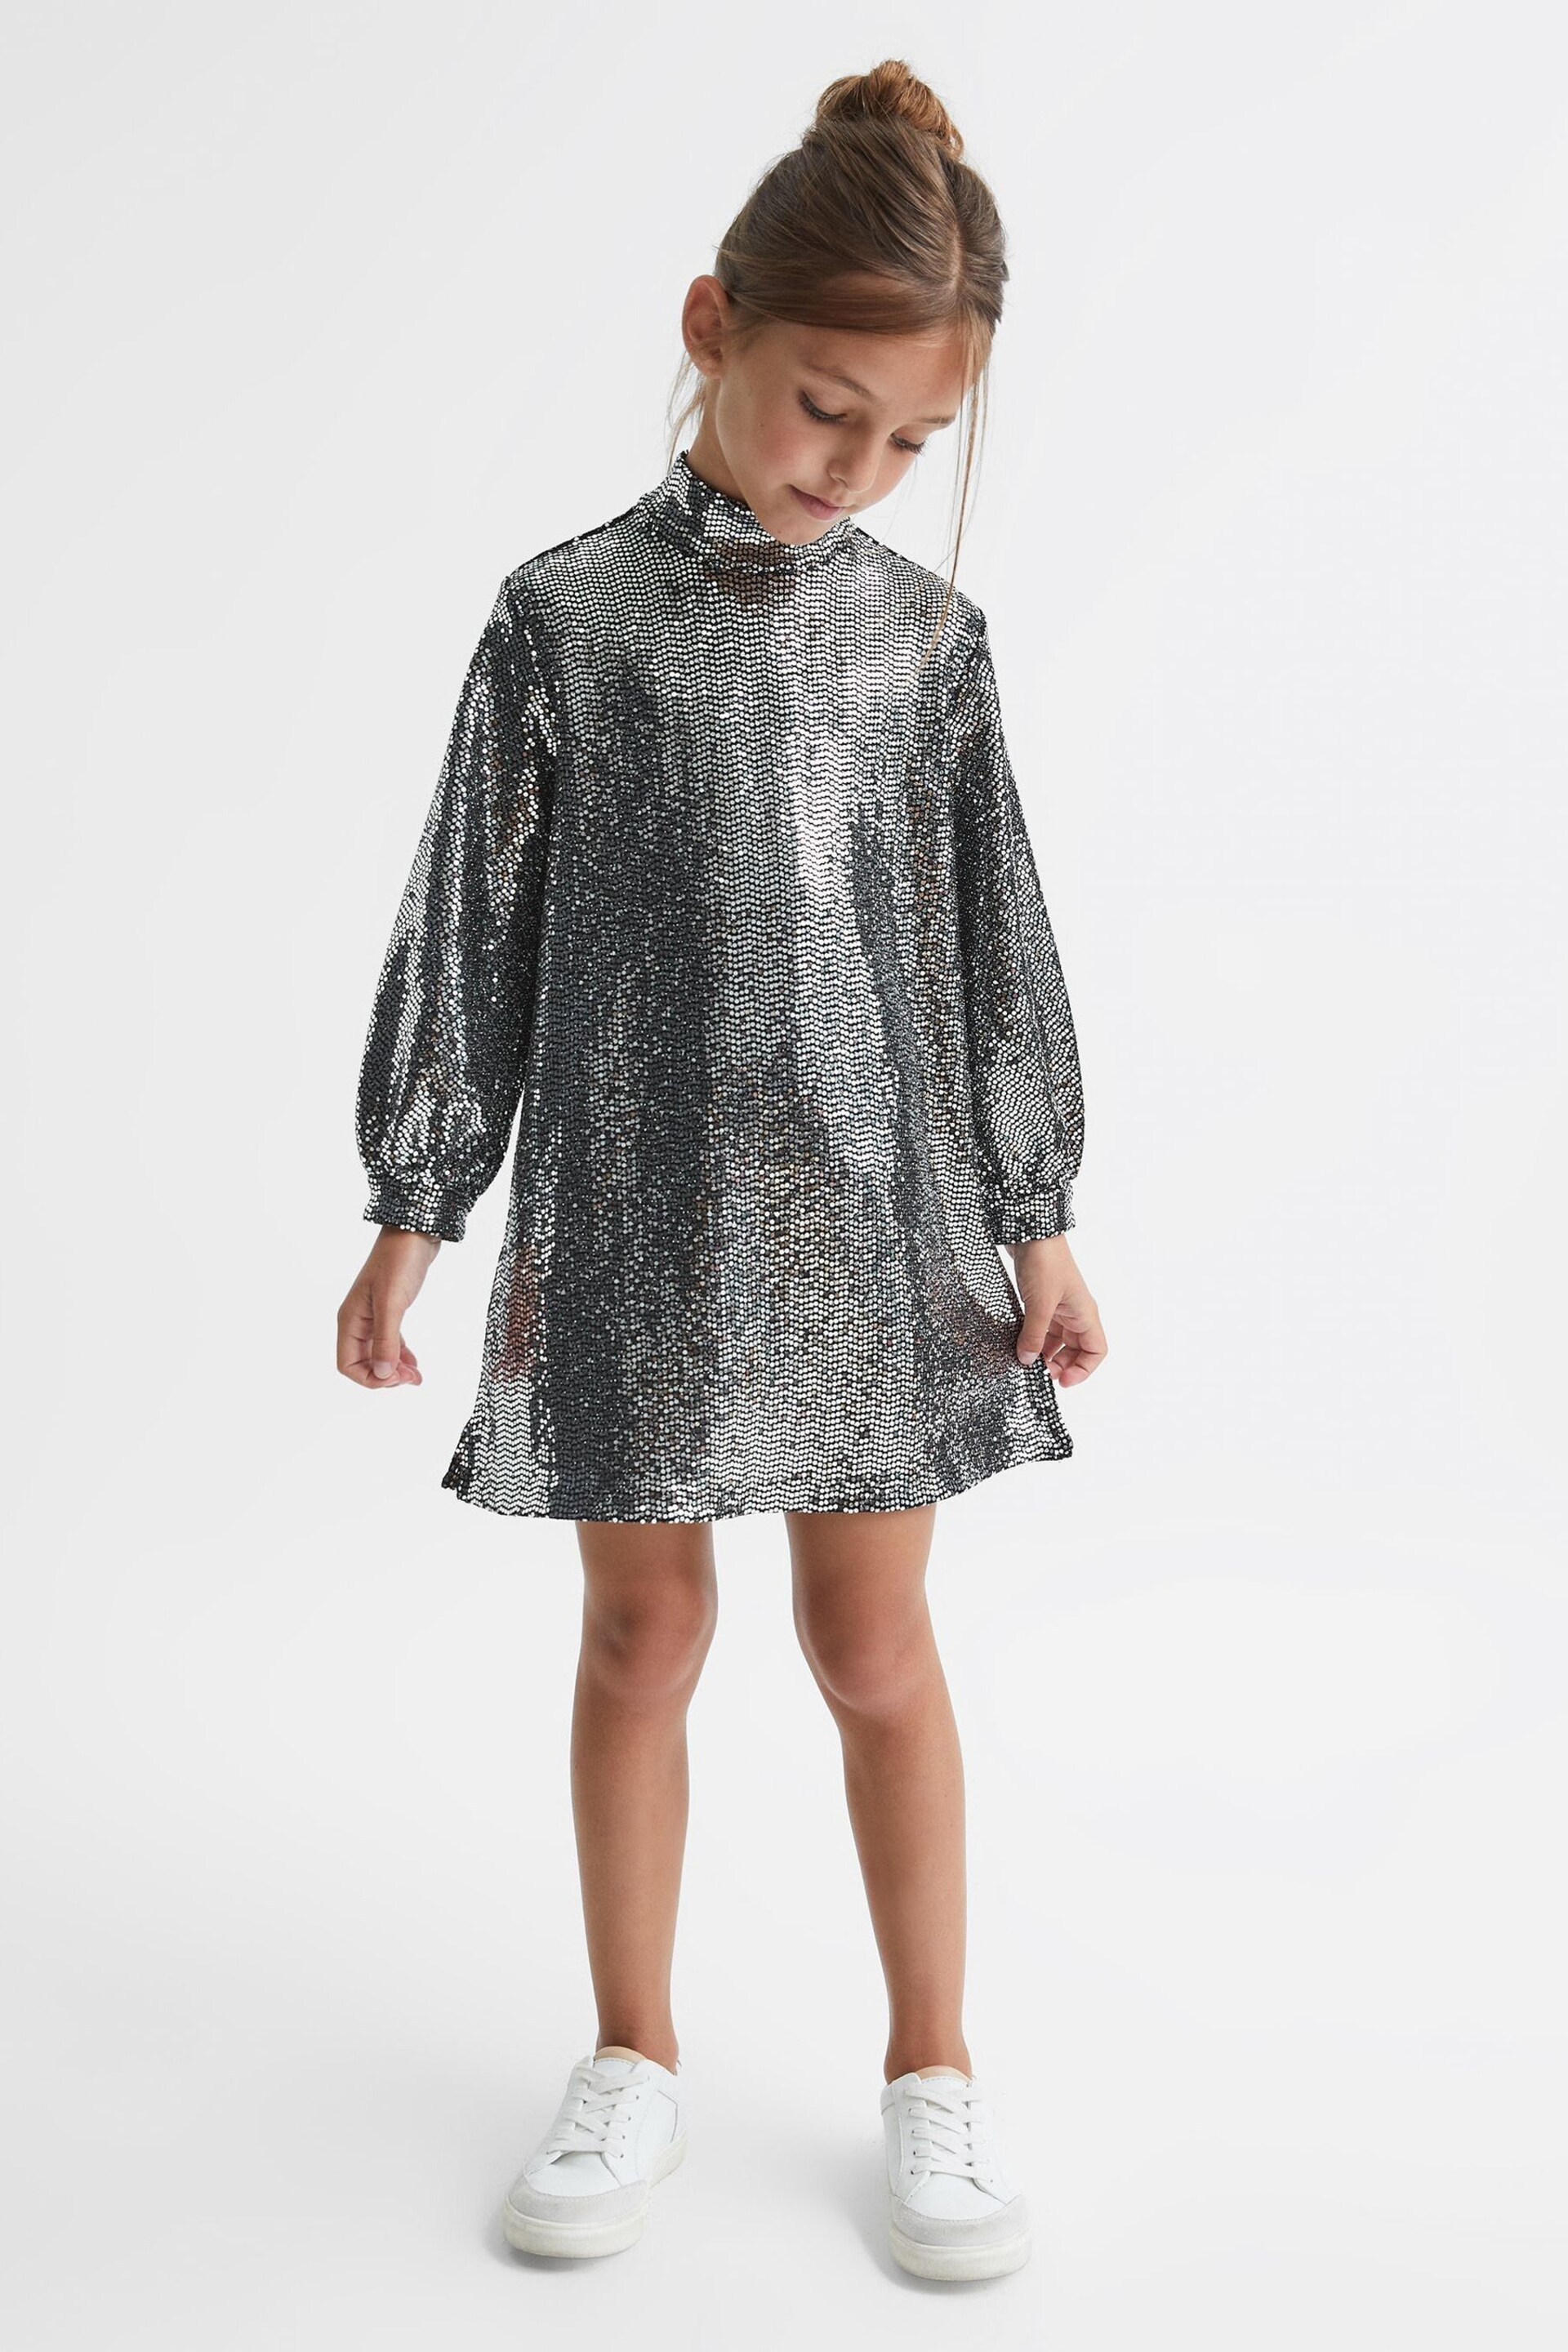 Reiss Silver Ariana Senior Sequin Short Skater Dress - Image 3 of 9